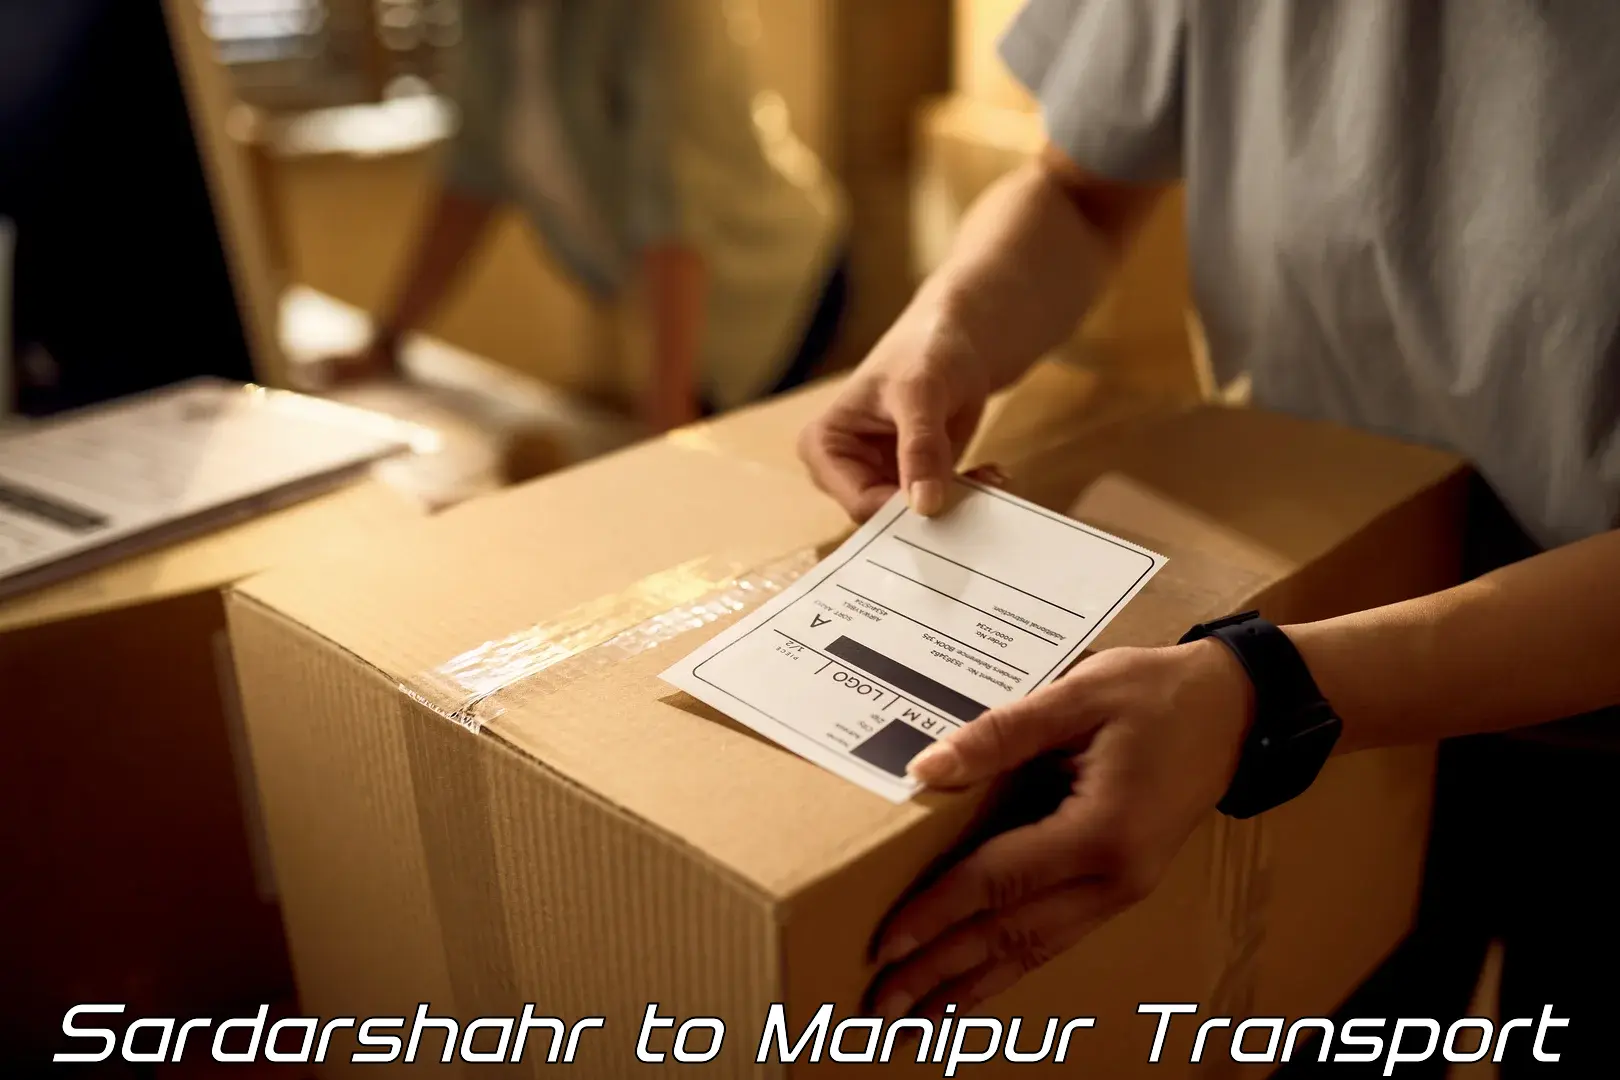 Road transport online services in Sardarshahr to Churachandpur